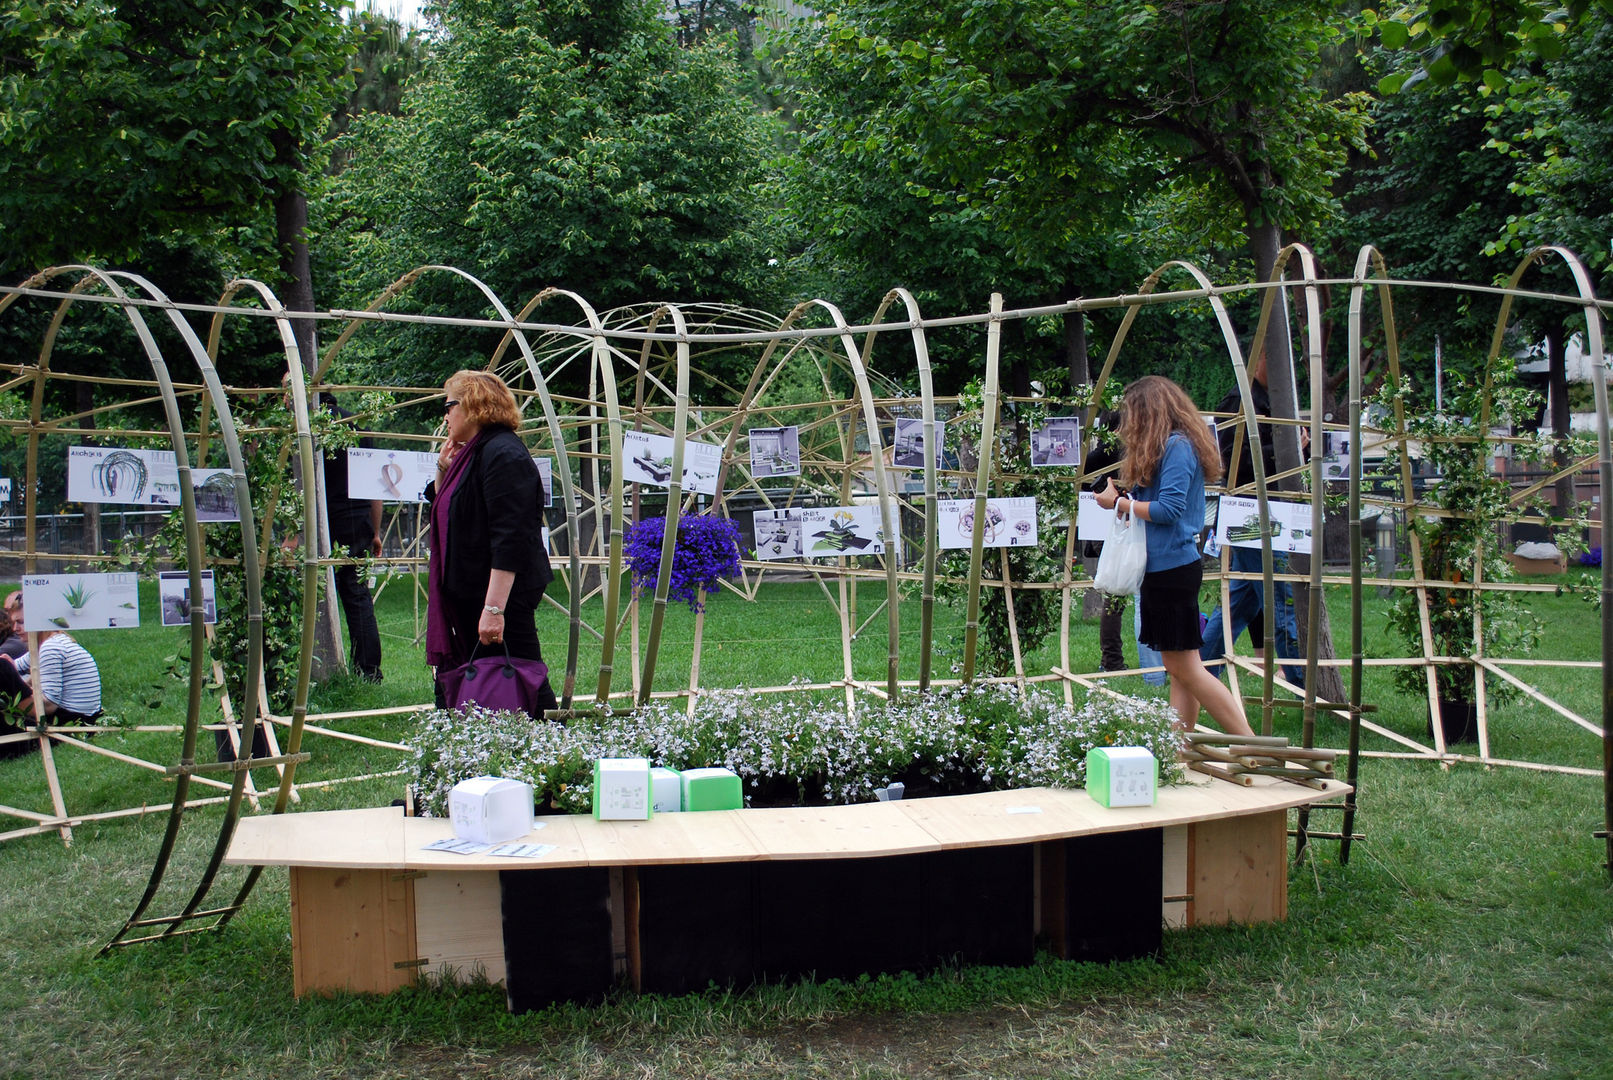 Foto installazione Stefania Lorenzini garden designer Giardino moderno